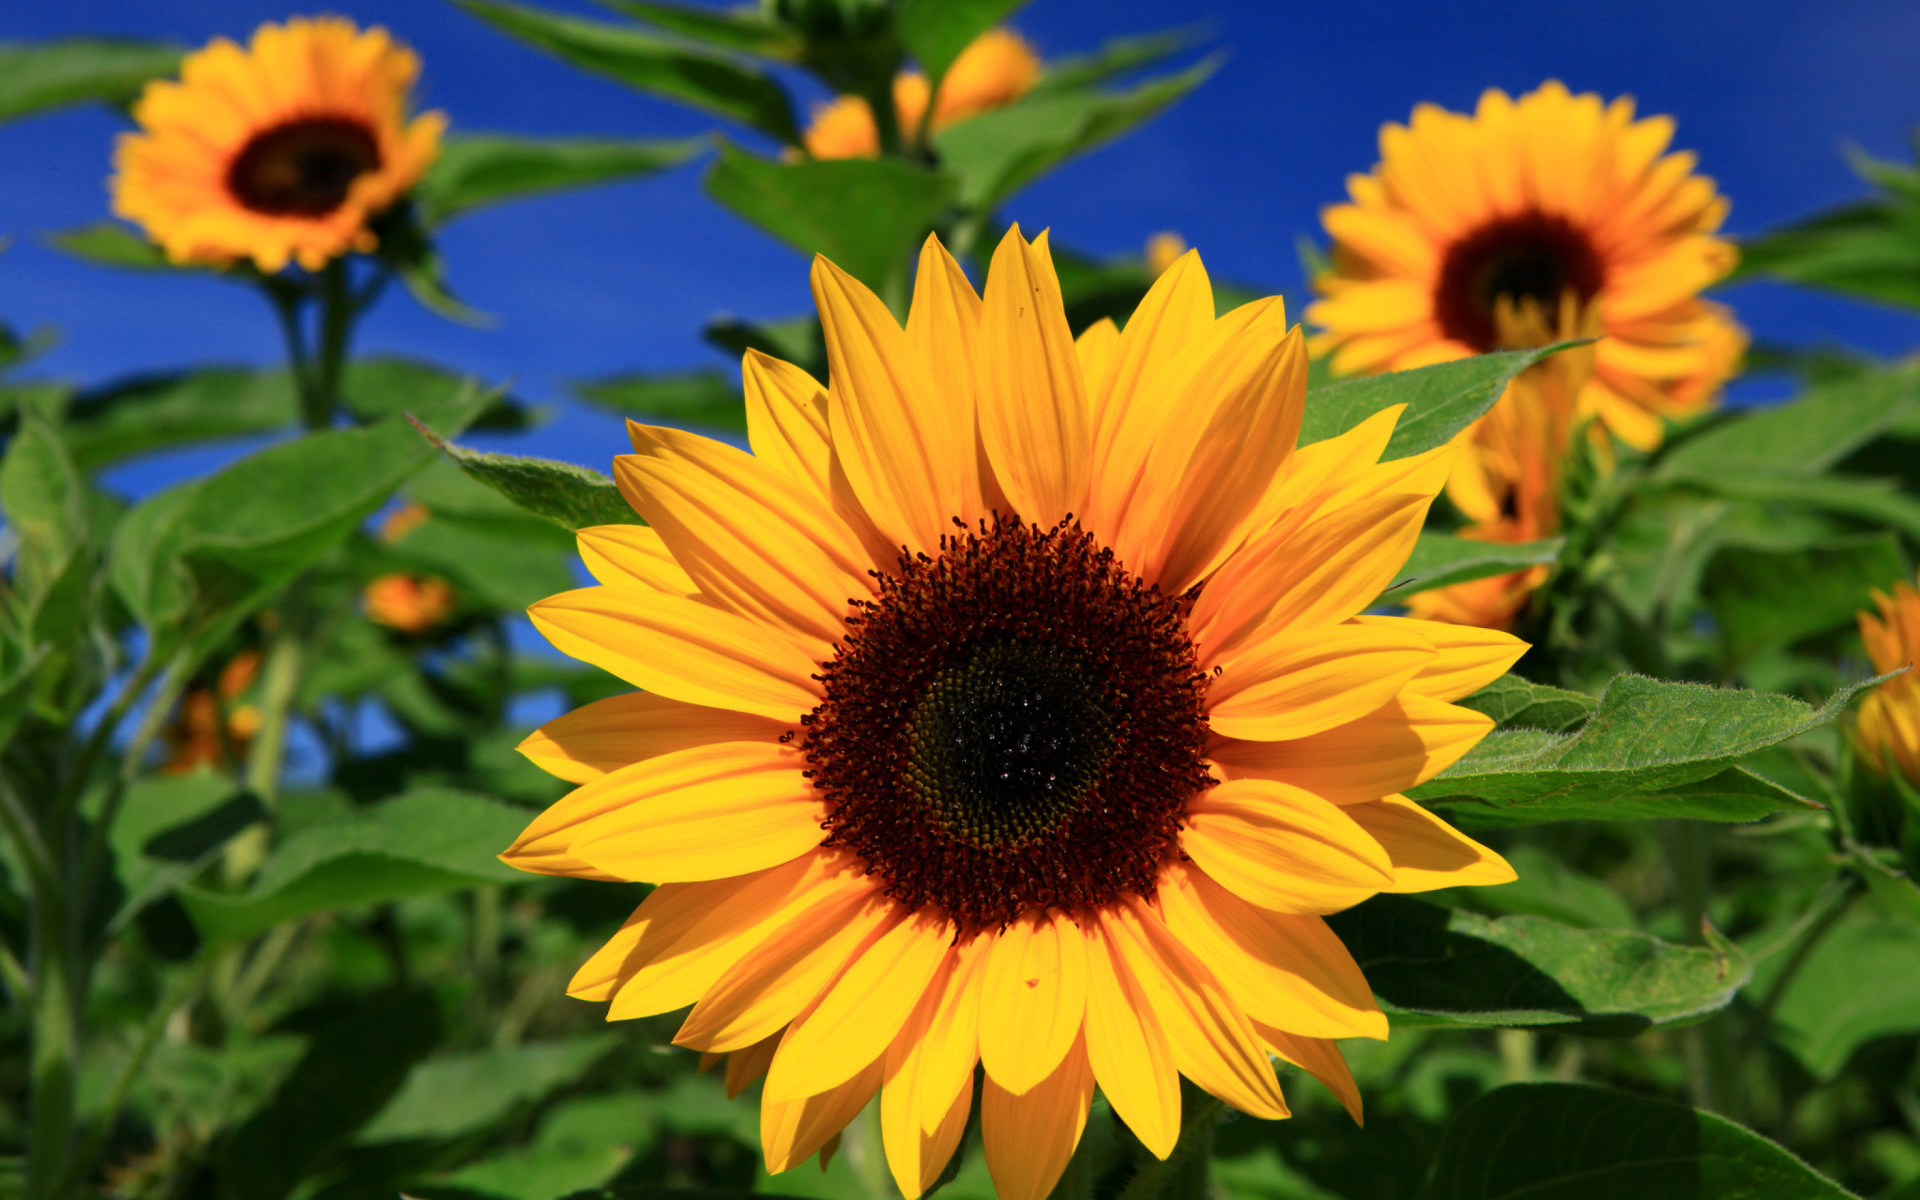 Hoa hướng dương (sunflower): Hoa hướng dương không chỉ là biểu tượng của tình yêu và sự hi vọng, mà còn mang lại cho ta sự bình yên và tràn đầy năng lượng. Hãy xem bức ảnh này để cảm nhận sự uyển chuyển và sắc nét của hoa hướng dương.